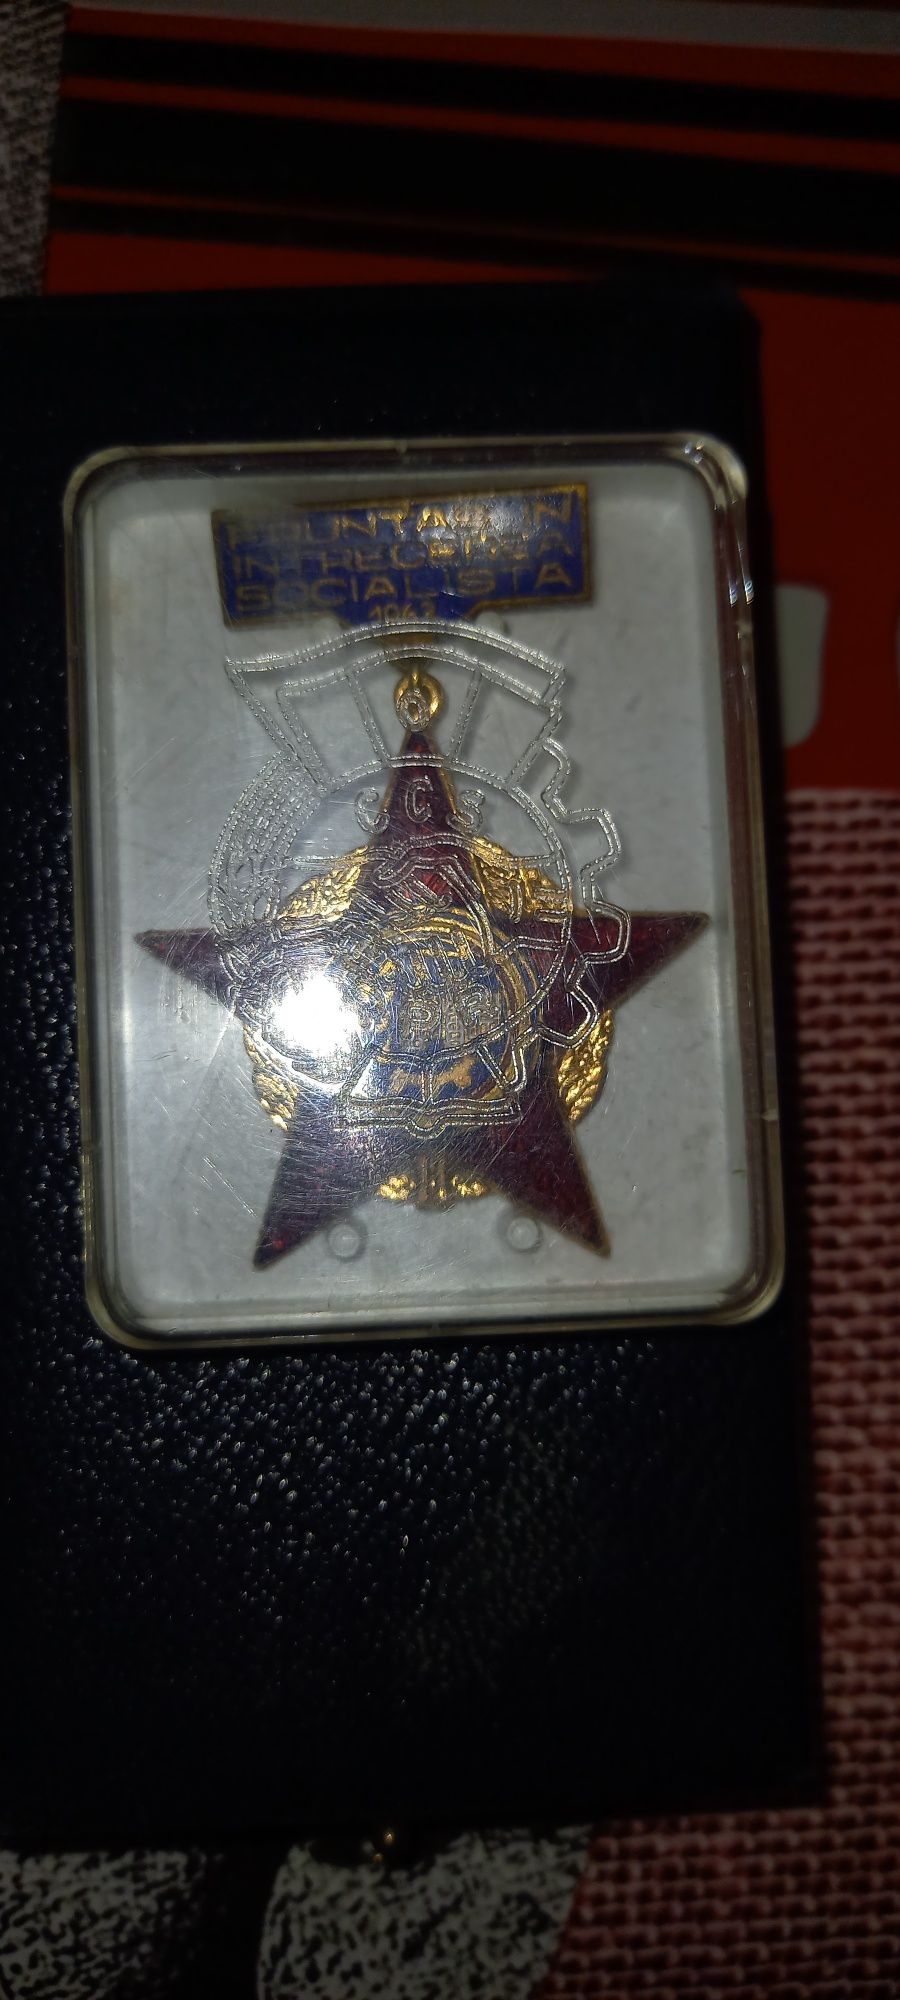 Lot insigne/medali vechi din perioada comunista